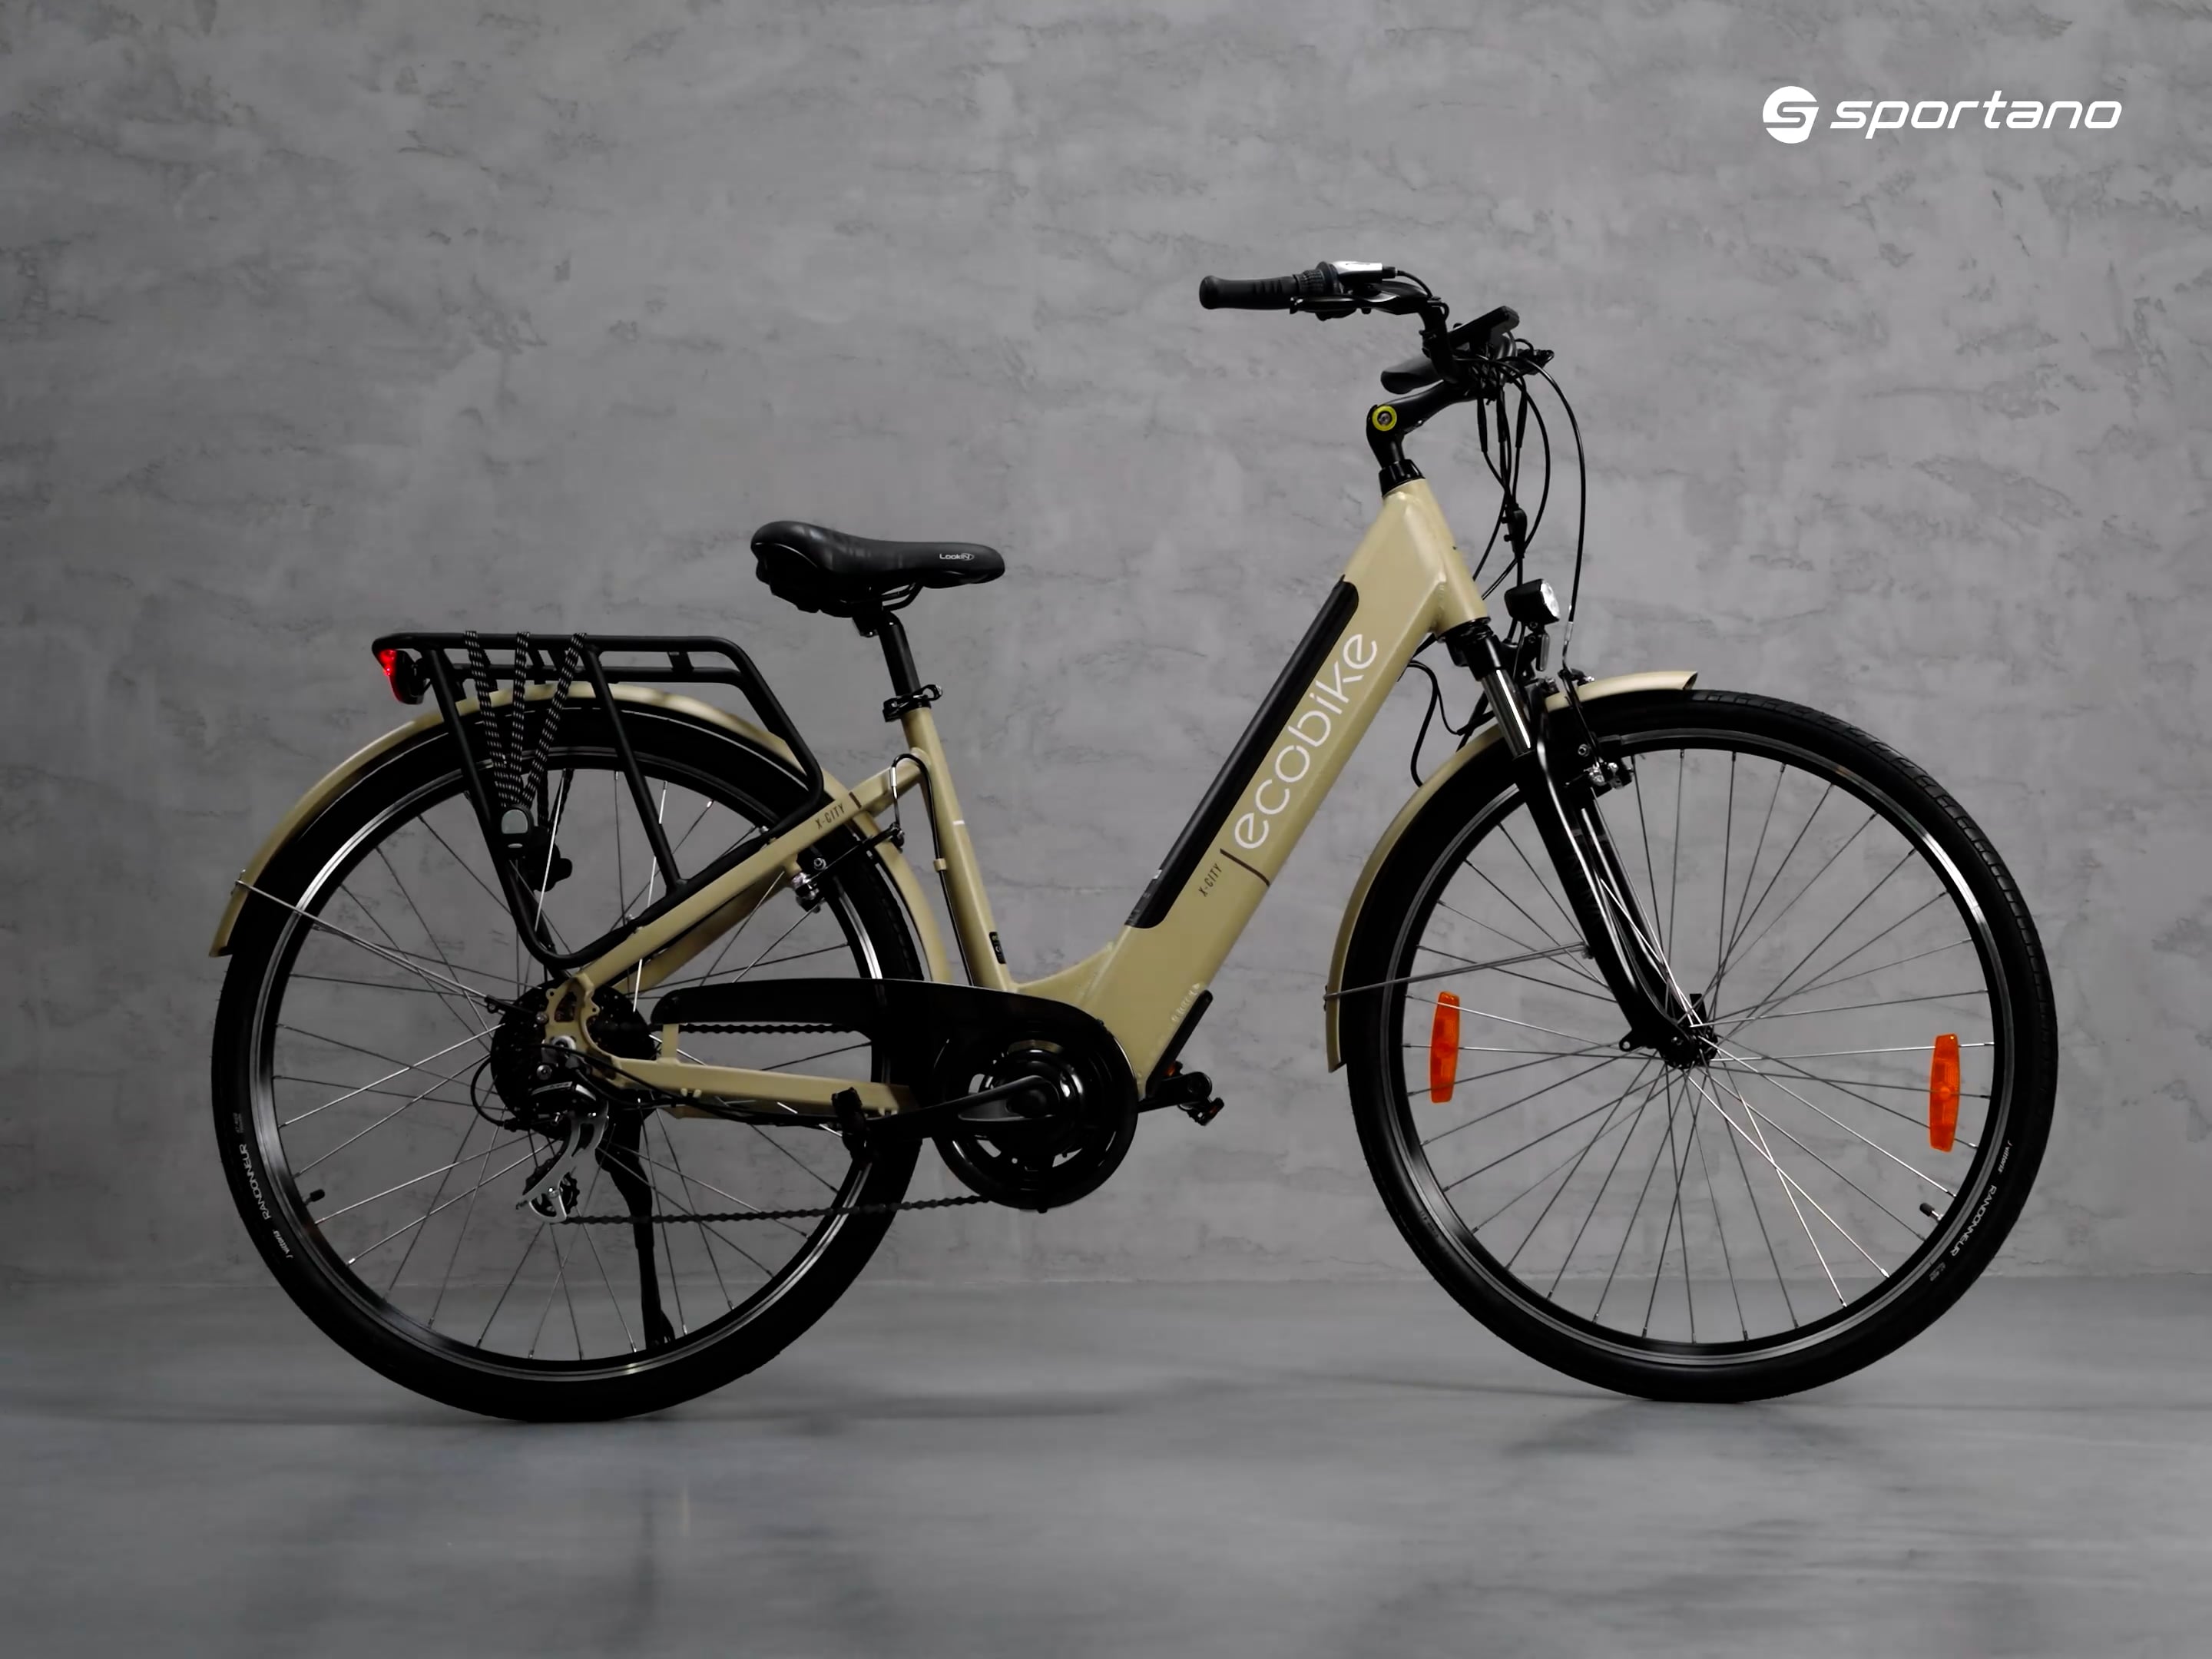 Elektromos kerékpár Ecobike X-City/X-CR LG 13Ah bézs 1010113